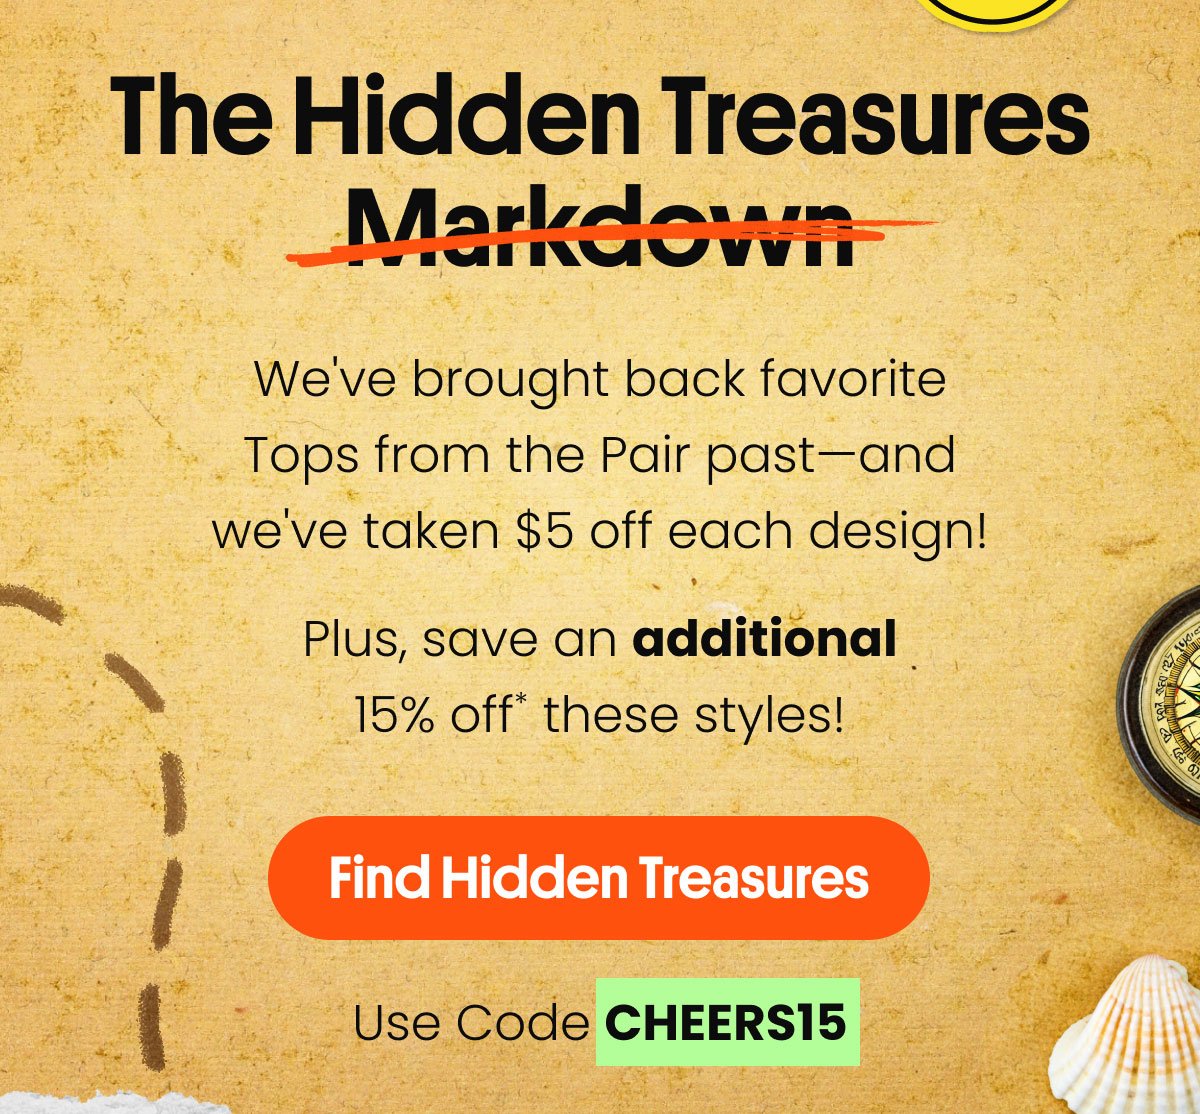 The Hidden Treasures Markdown